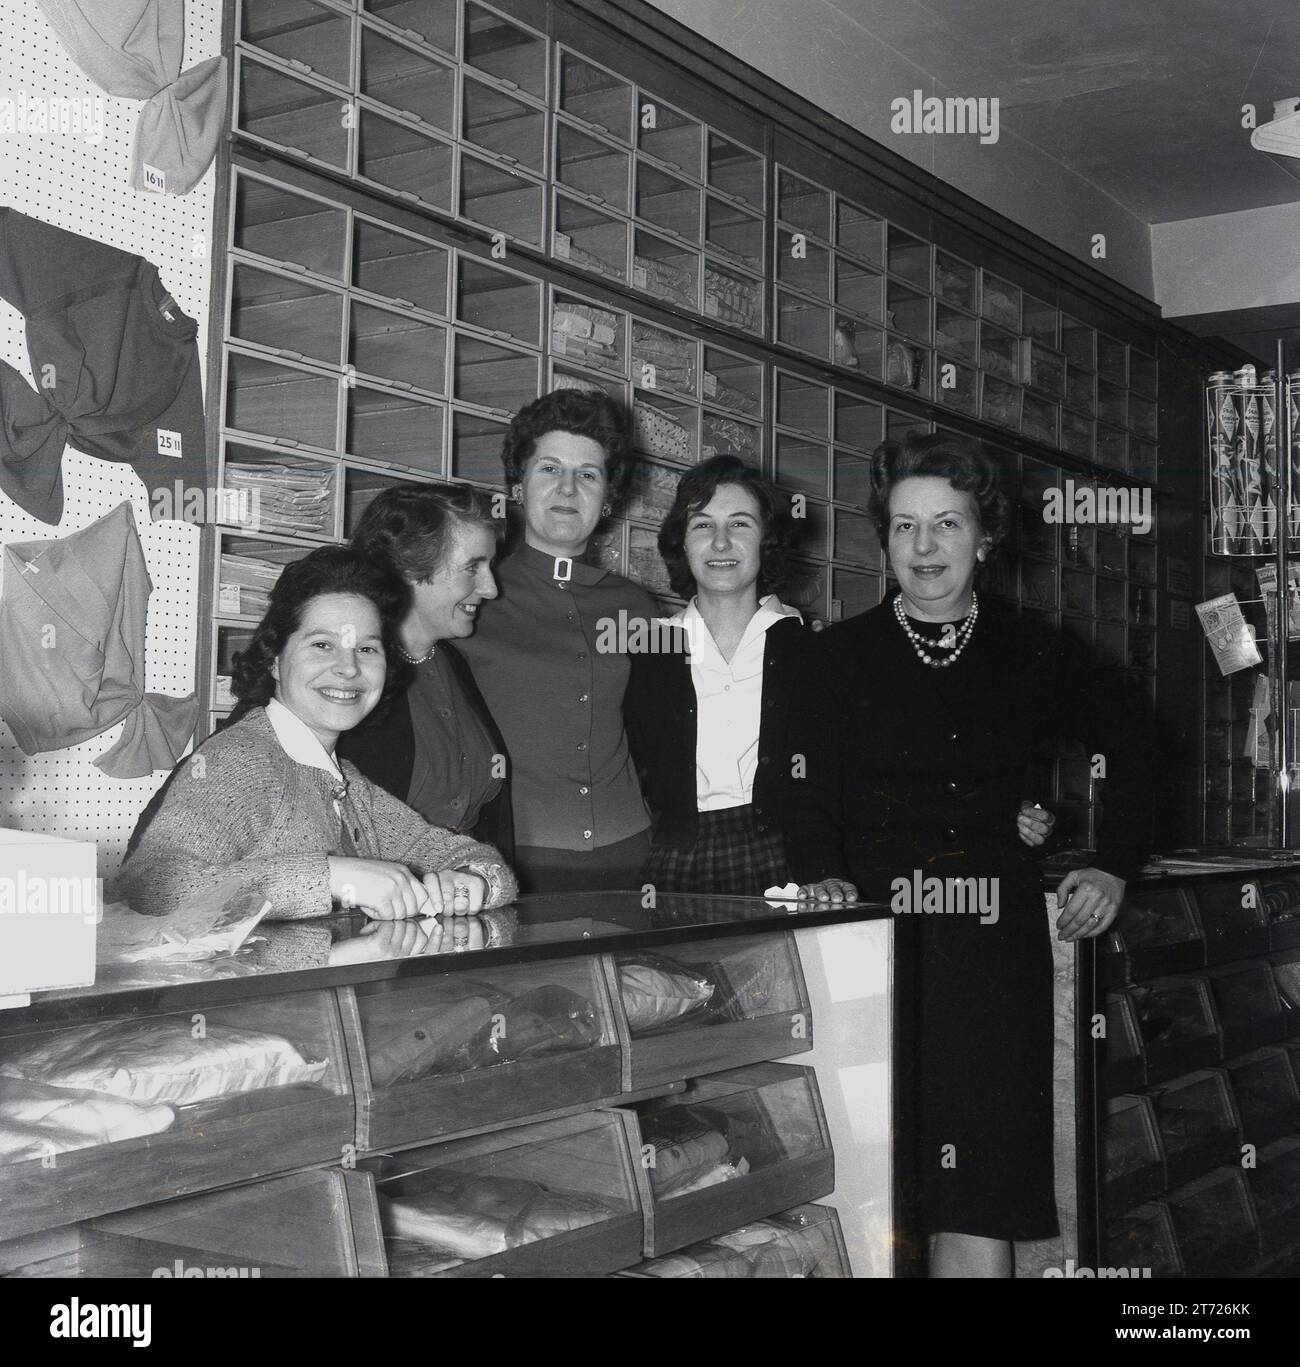 Dans les années 1960, des assistantes de magasin, gérante et propriétaire historiques se sont réunies pour une photo à l'intérieur d'un magasin vendant des hauts, des pulls et des cardigans en laine pour femmes, Angleterre, Royaume-Uni. Présentoirs traditionnels en bois pour les vêtements sur le mur derrière. Banque D'Images